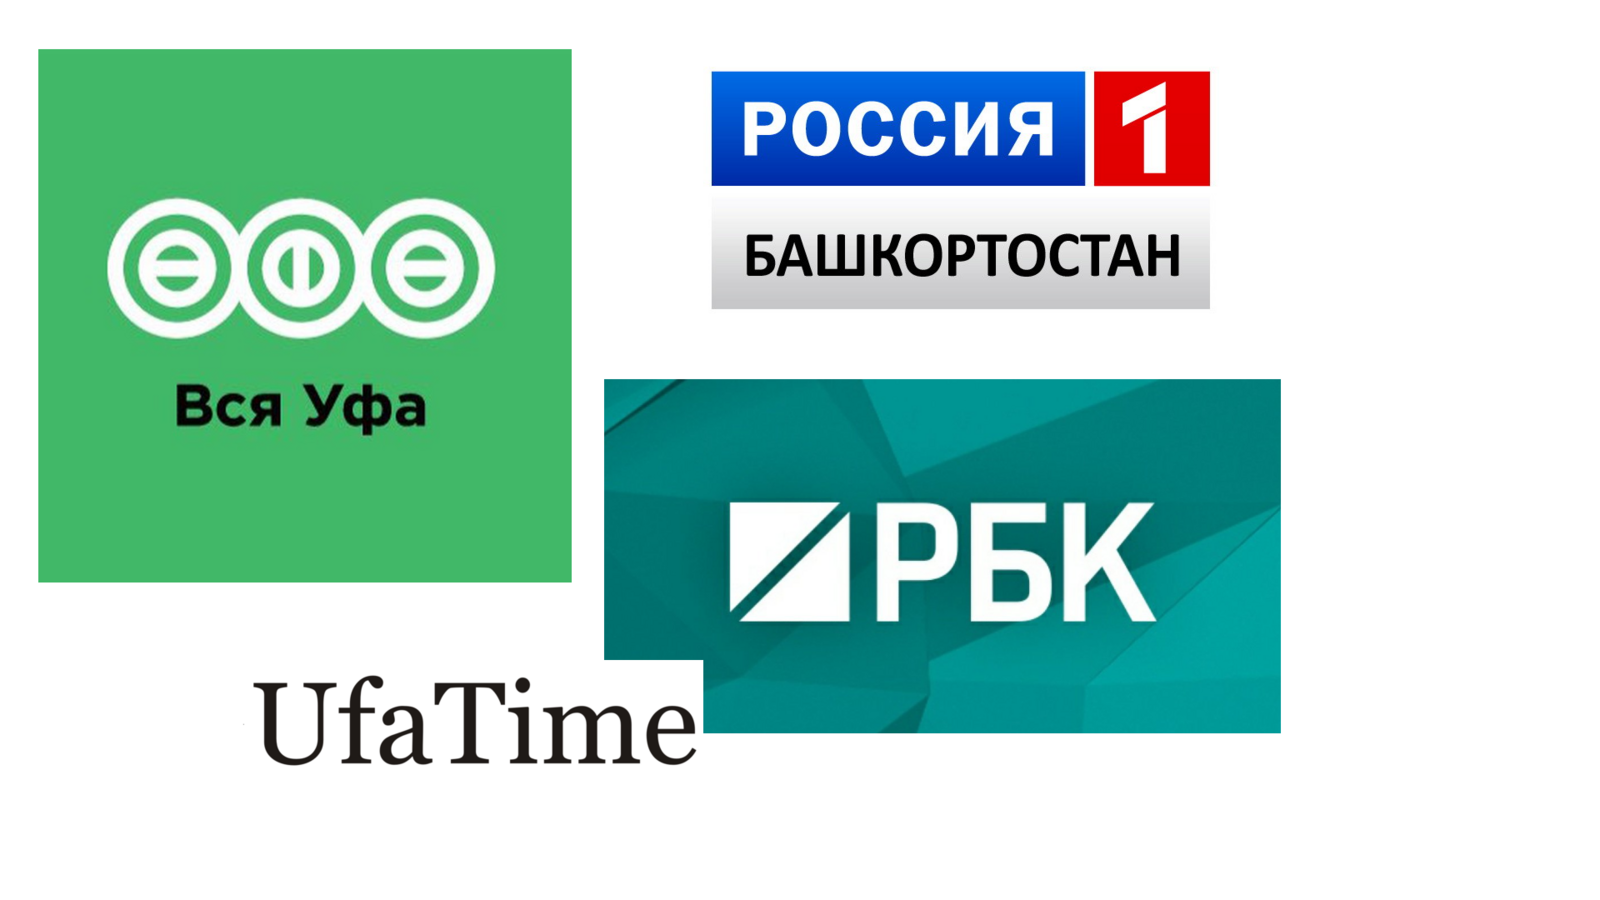 Андрей Назаров прокомментировал включение в санкционный список Украины журналистов из Башкирии